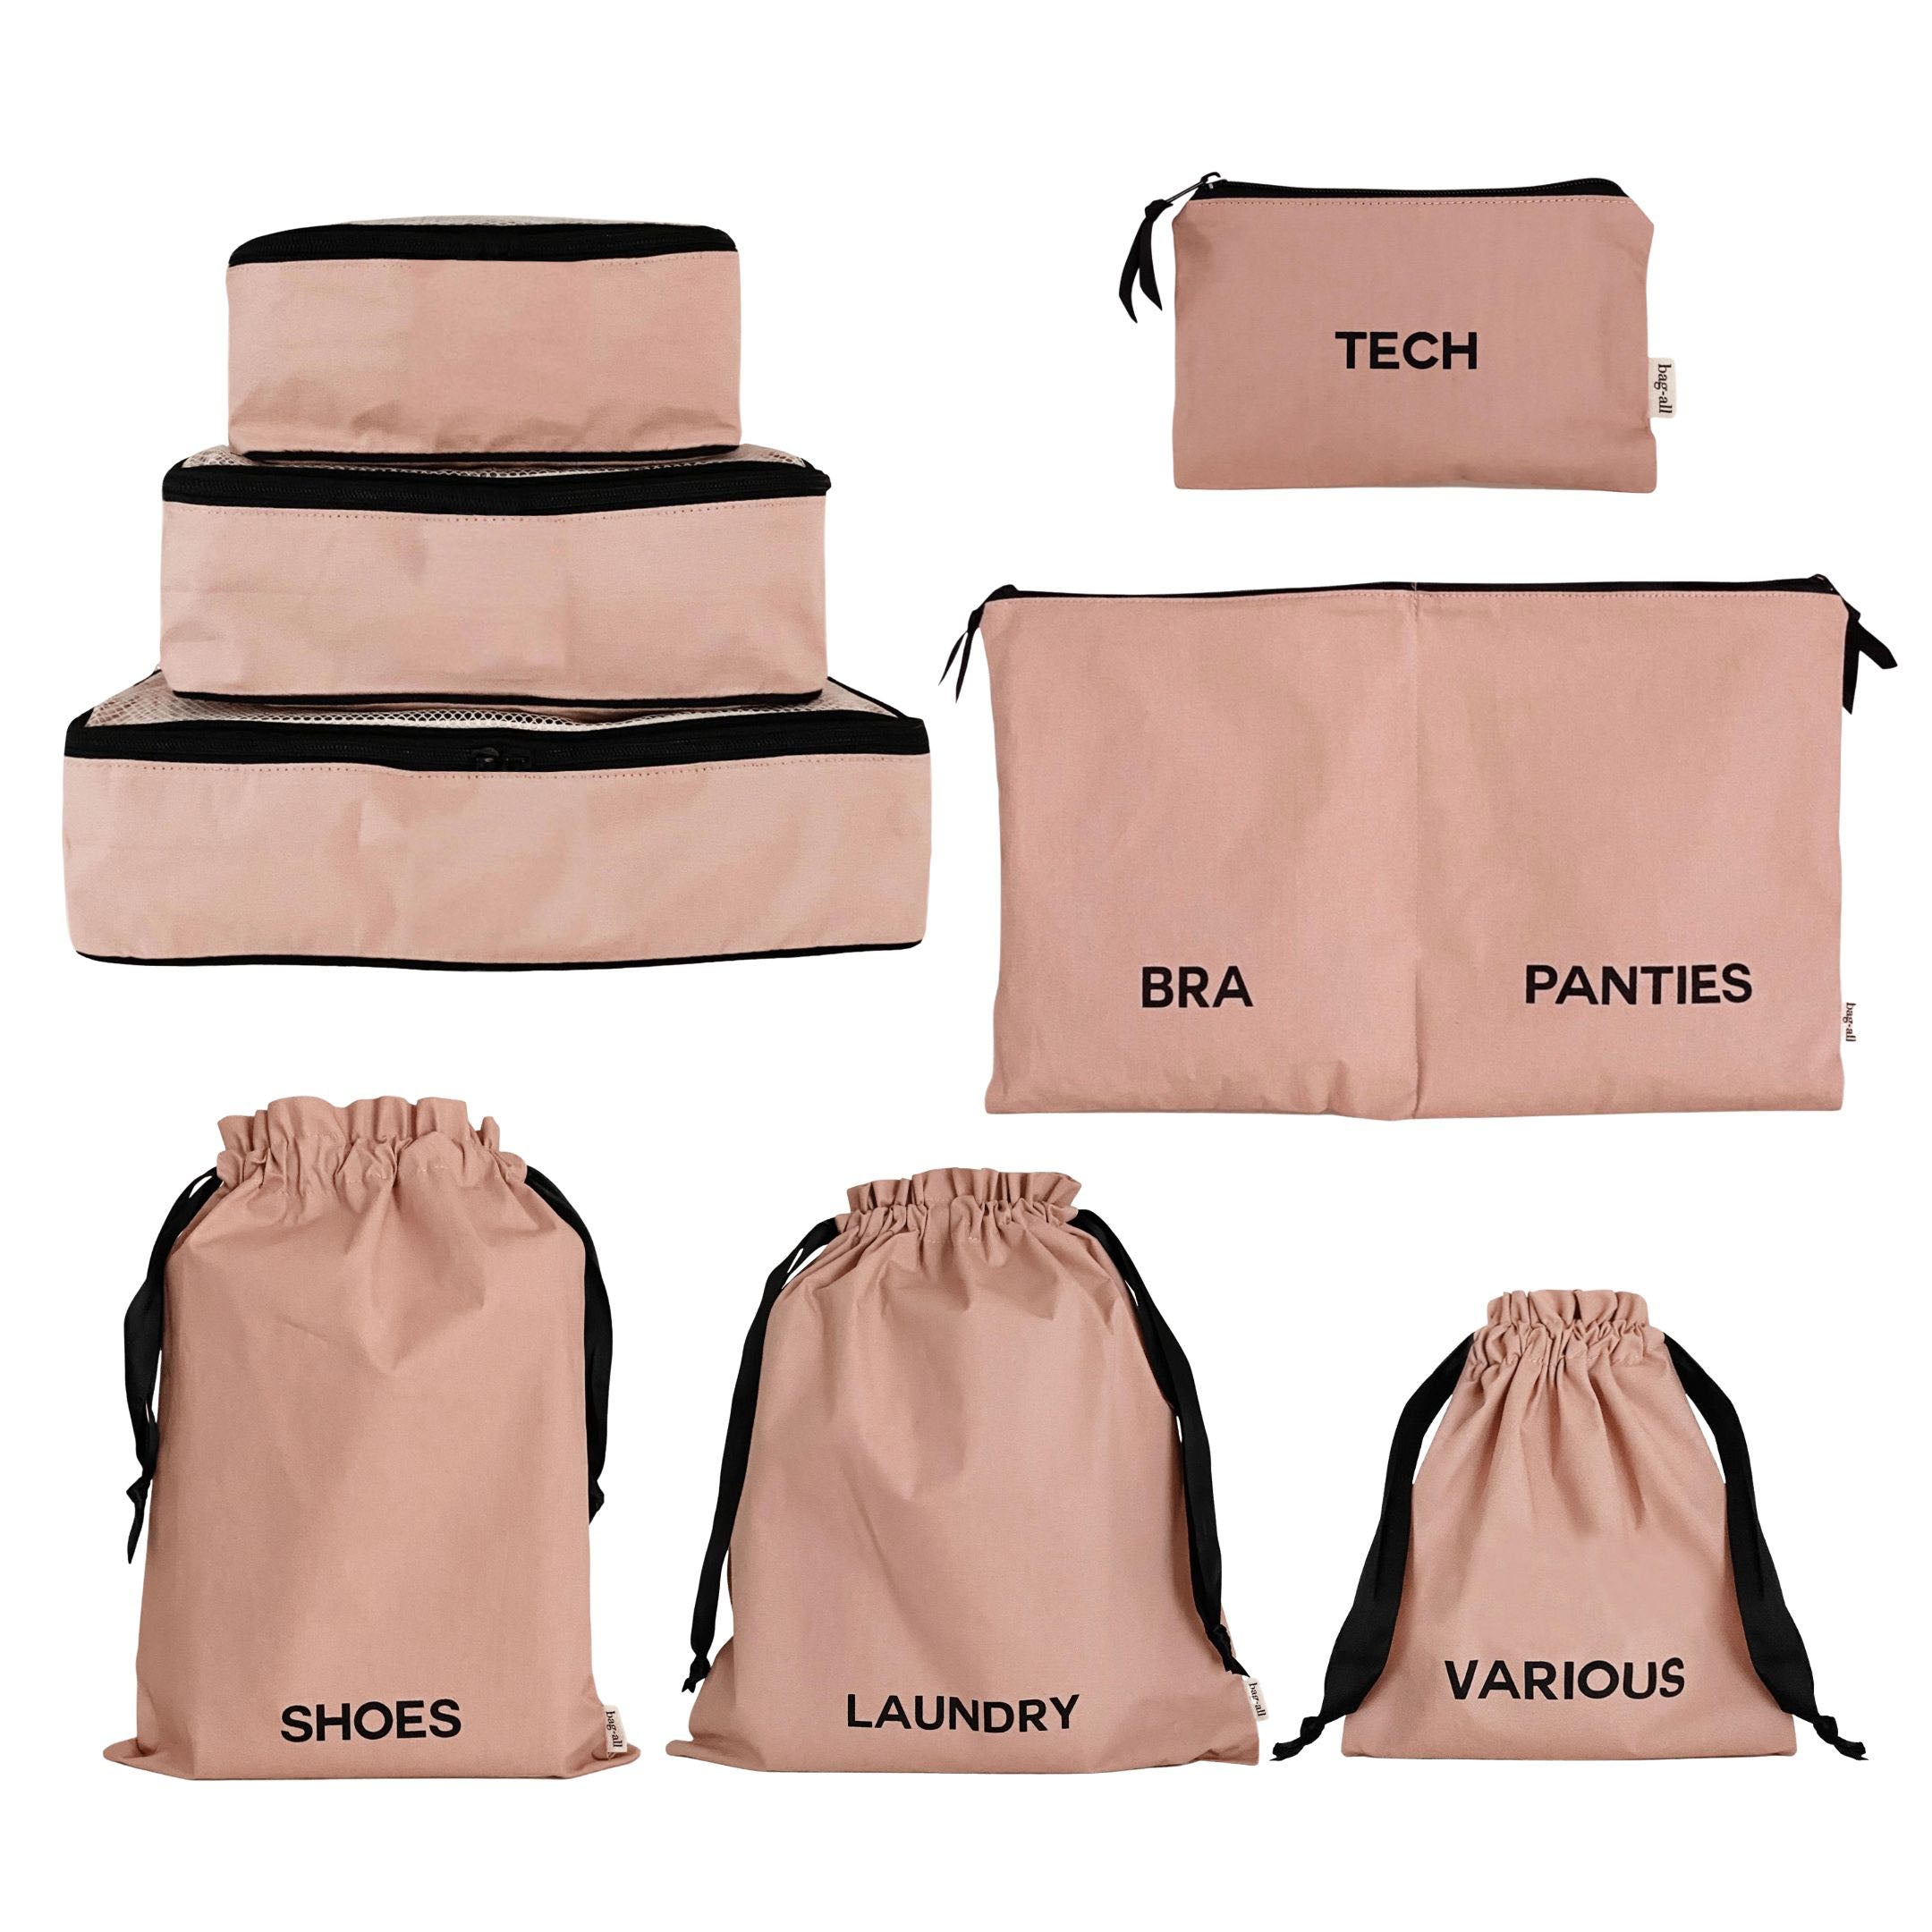 BA Sacs d'organisation de voyage, Coton de qualité Rose Poudré, Pack de 8 - Bag-all France